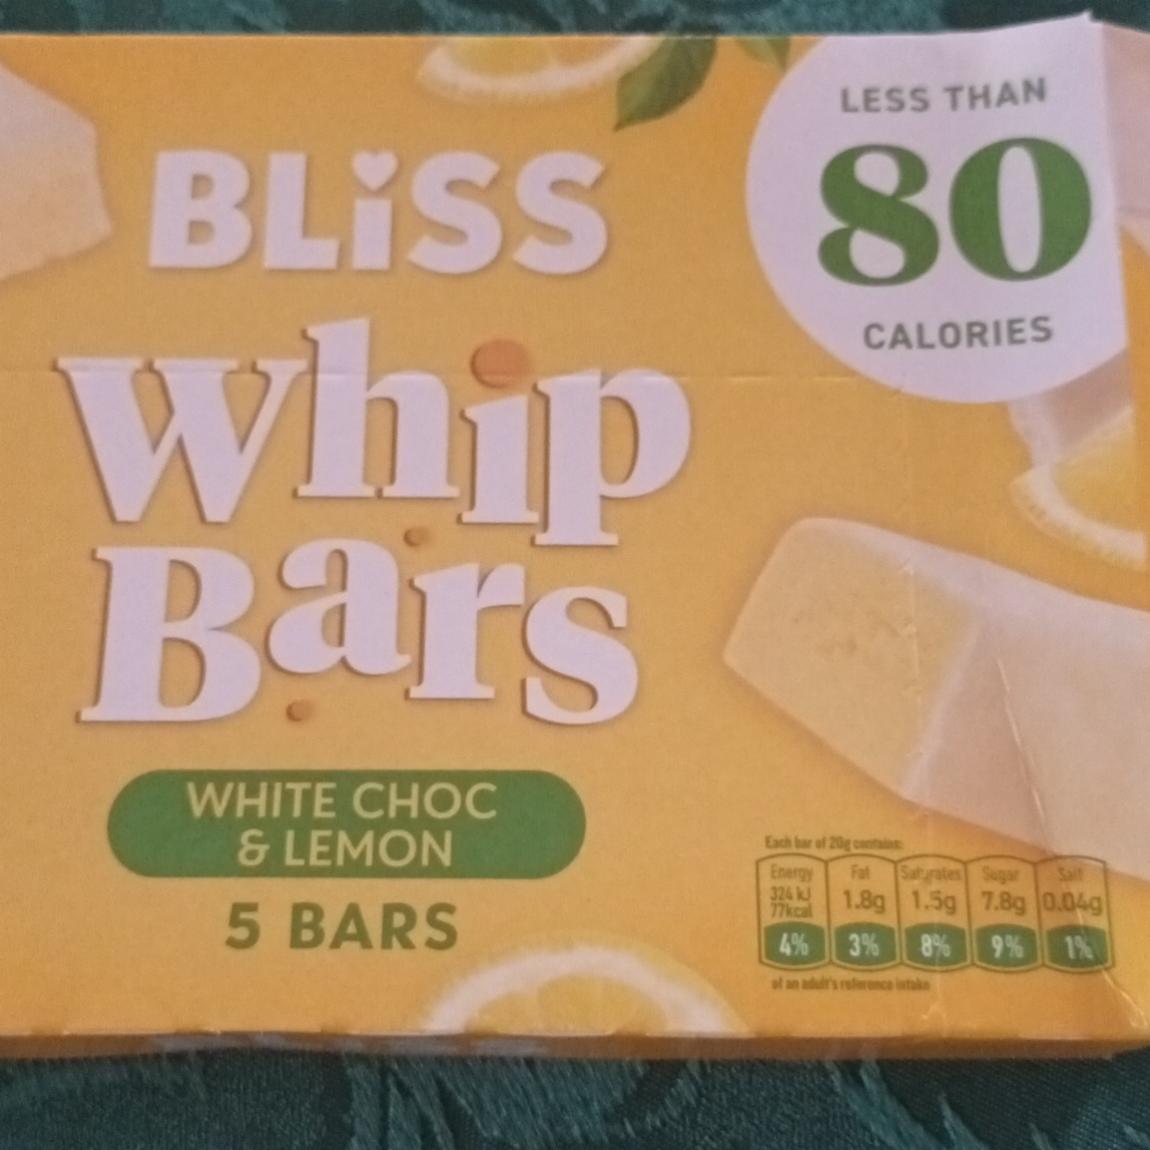 Fotografie - Whip Bars White choc & Lemon Bliss